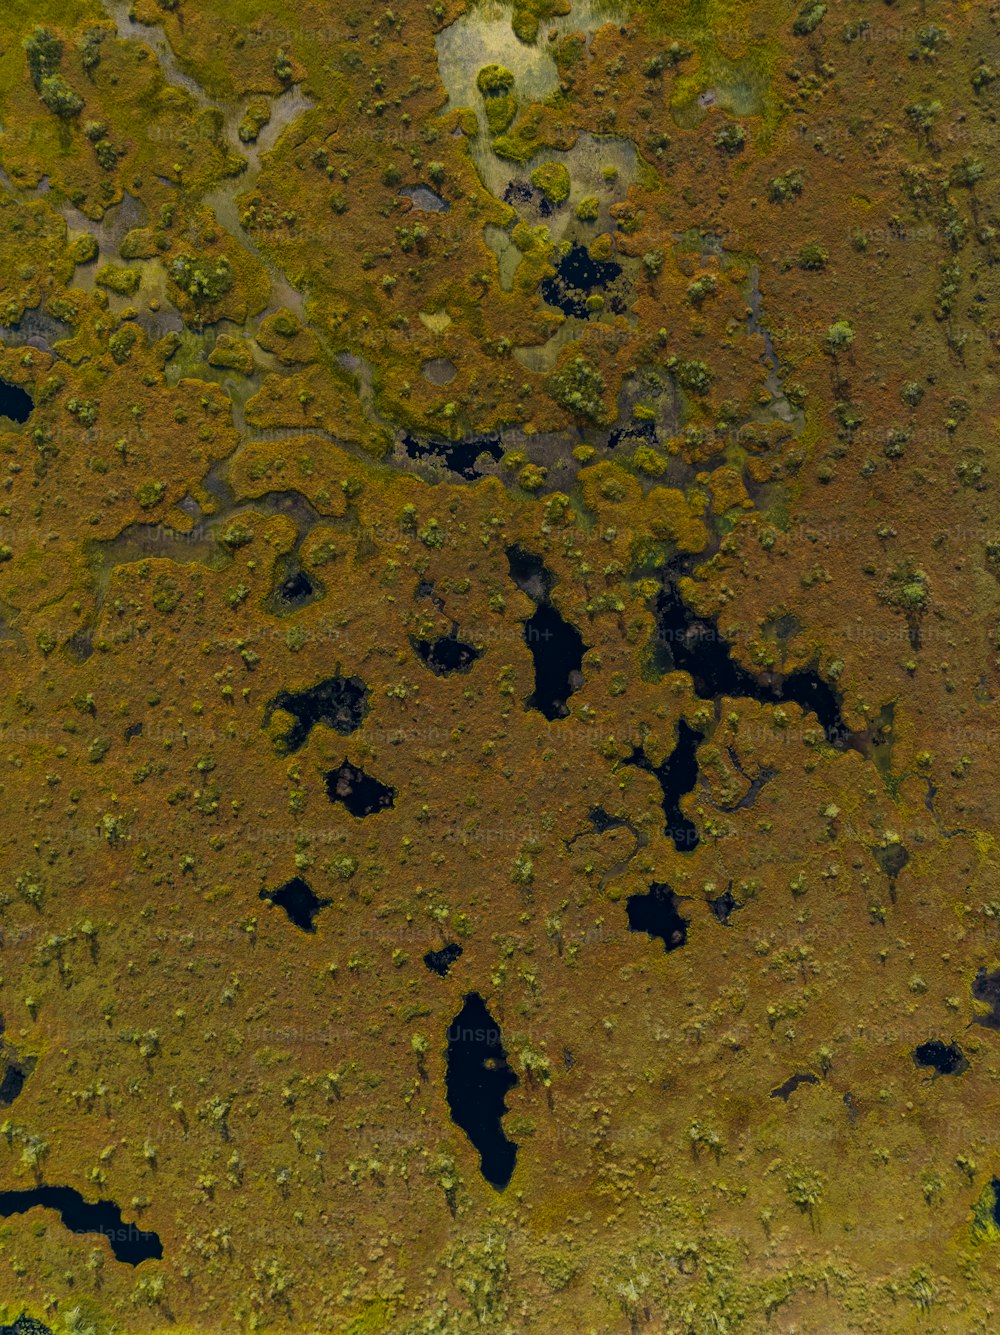 une vue aérienne d’une zone herbeuse avec beaucoup d’eau